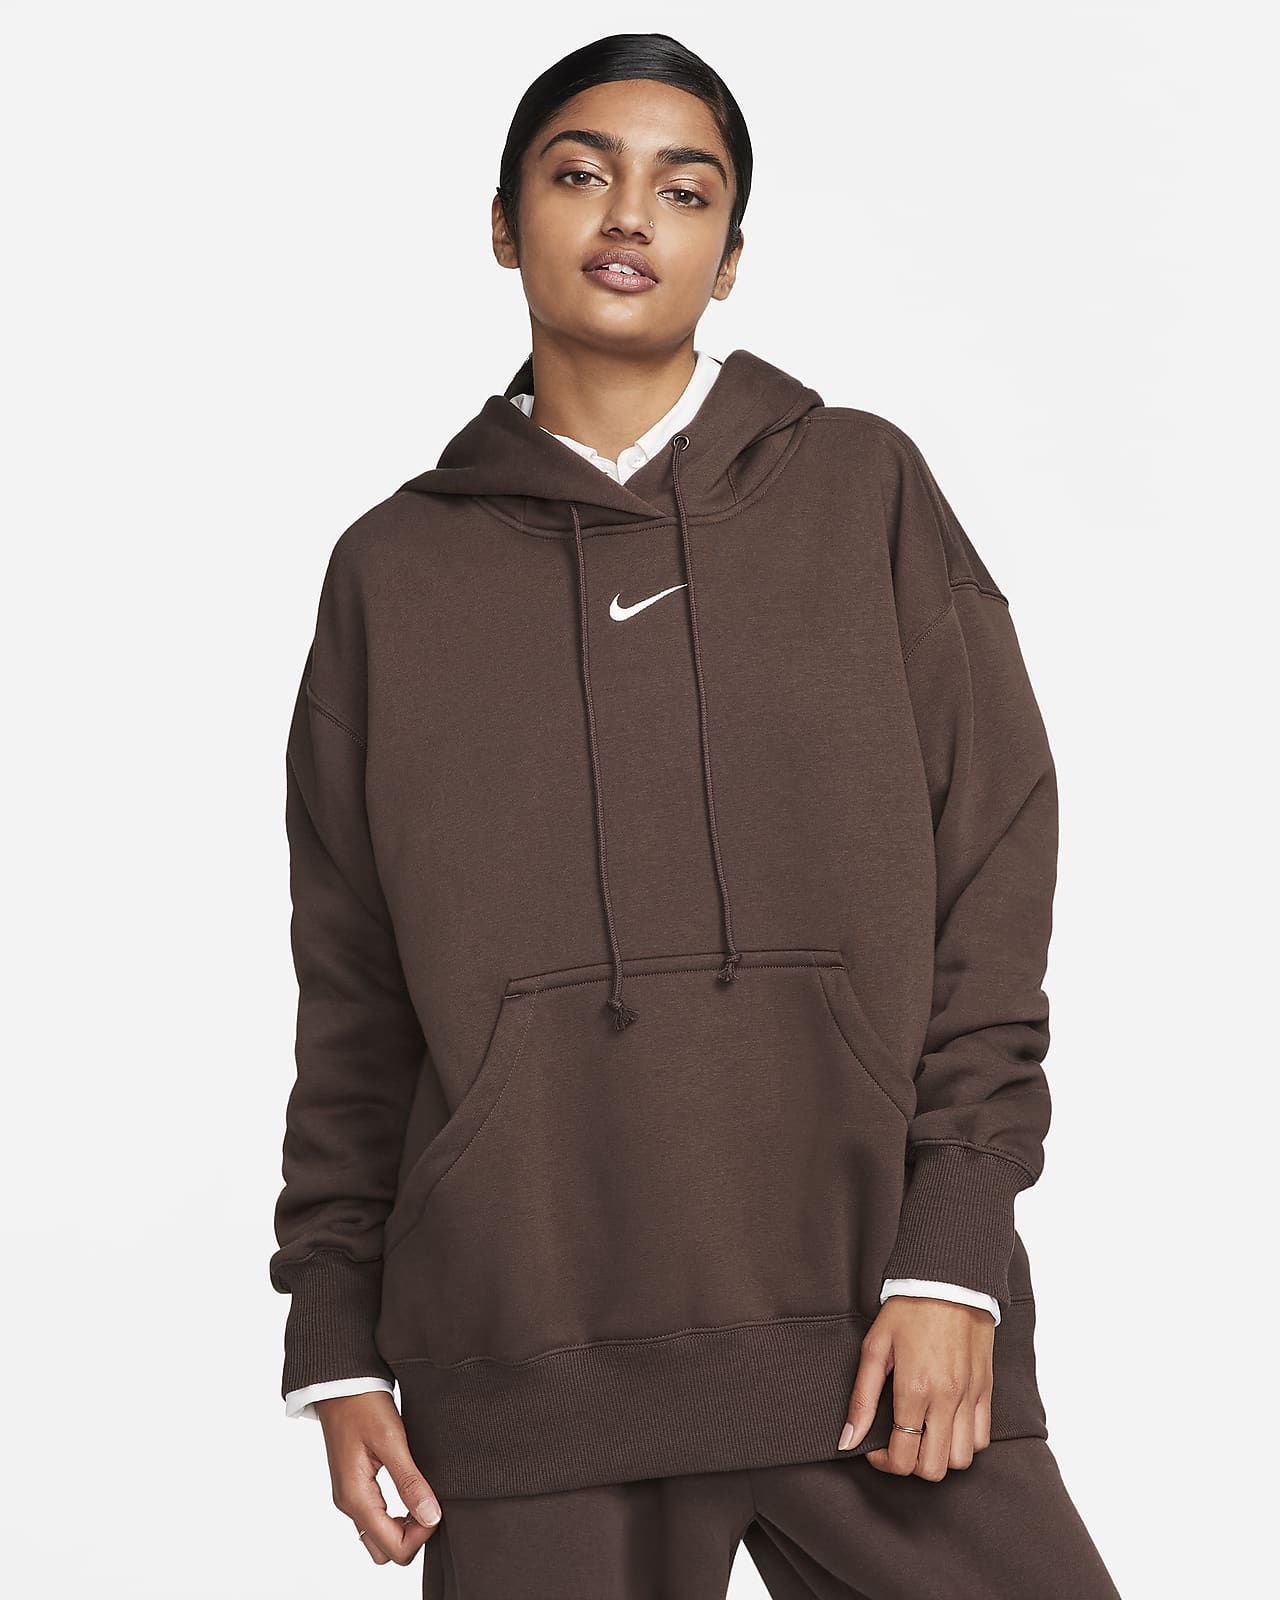 Nike Sportswear Phoenix Fleece Women's Oversized Pullover Hoodie. Nike.com | Nike (US)